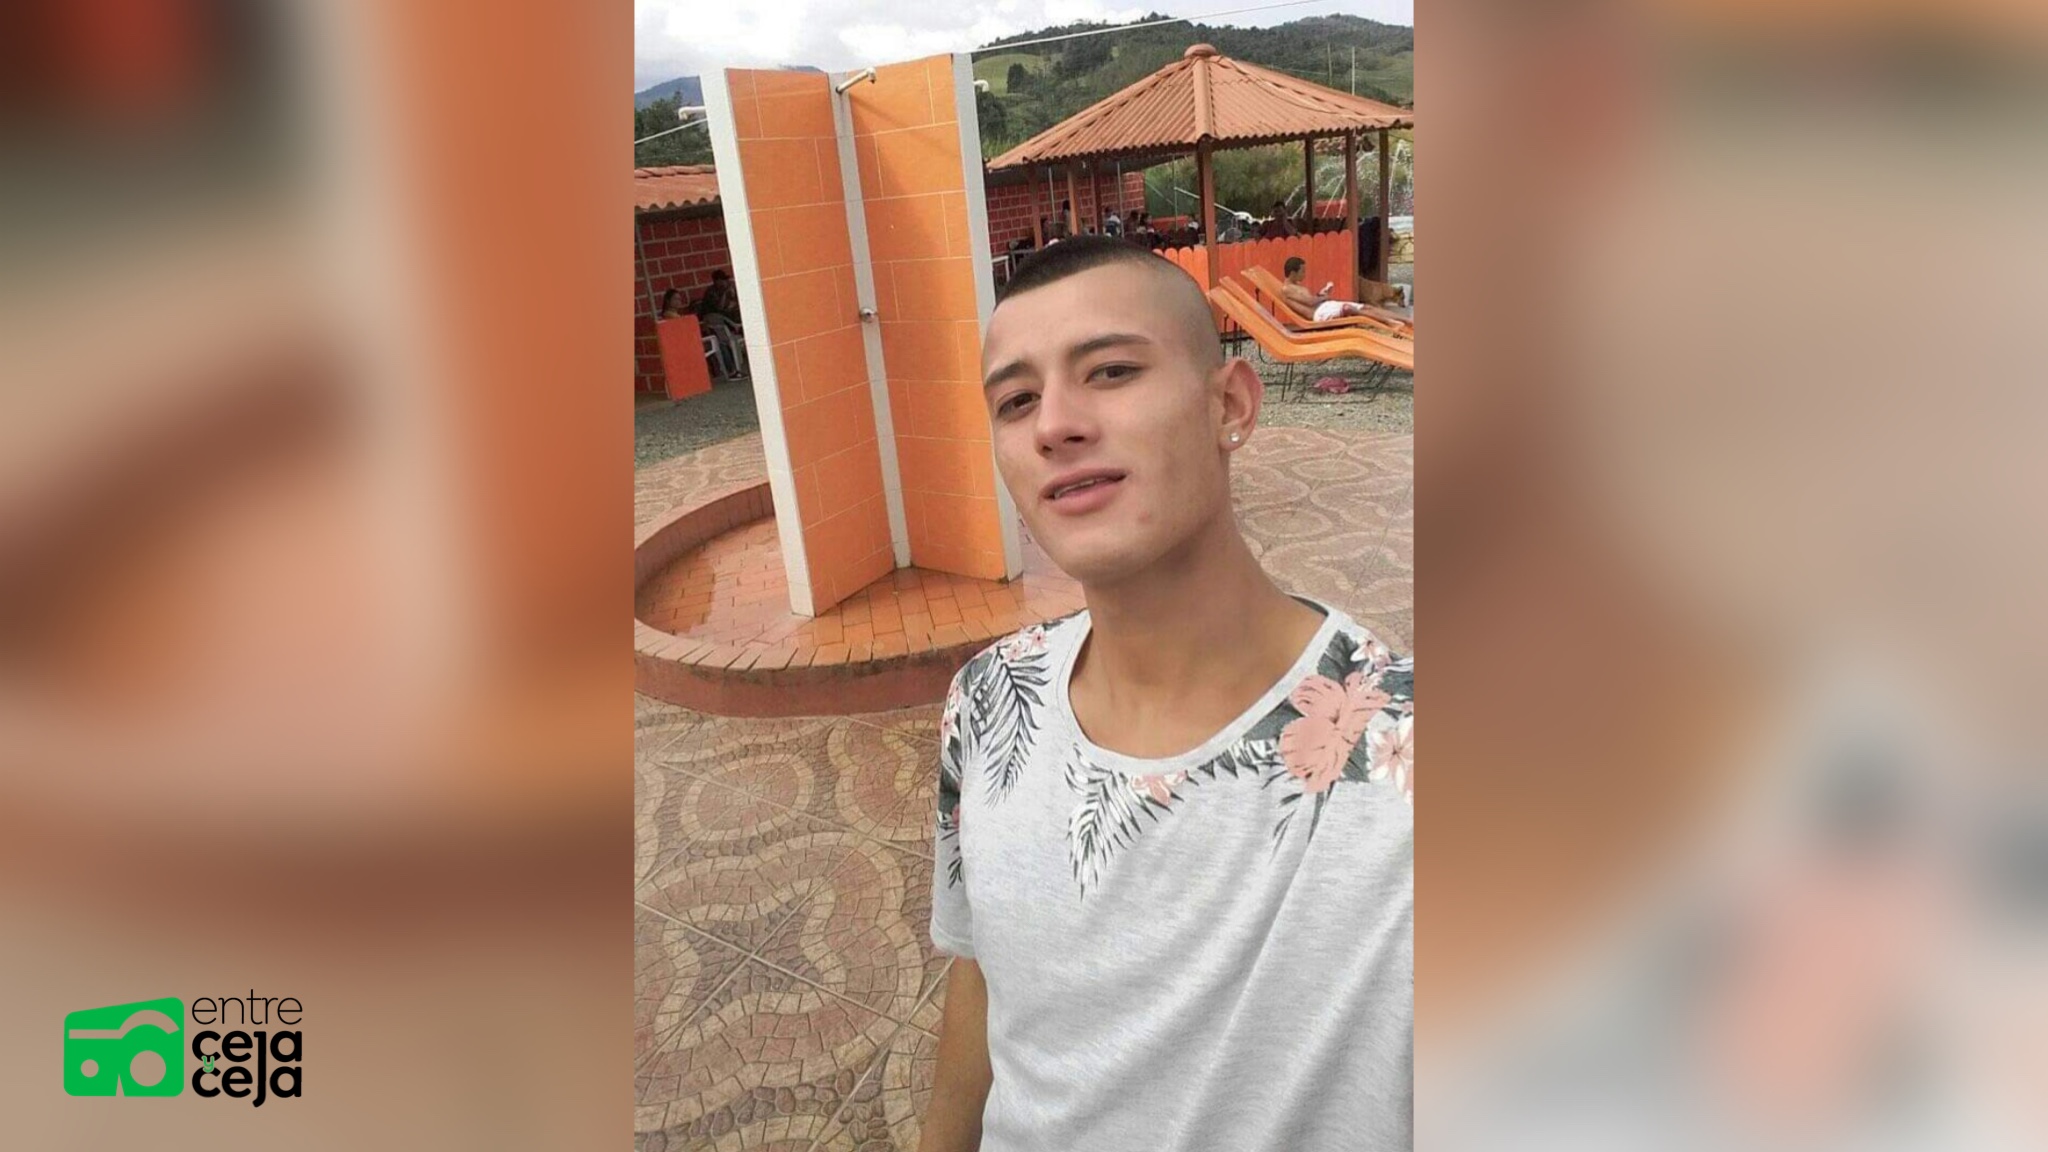 Buscan a joven de 20 años desaparecido en Marinilla desde el pasado 12 de junio